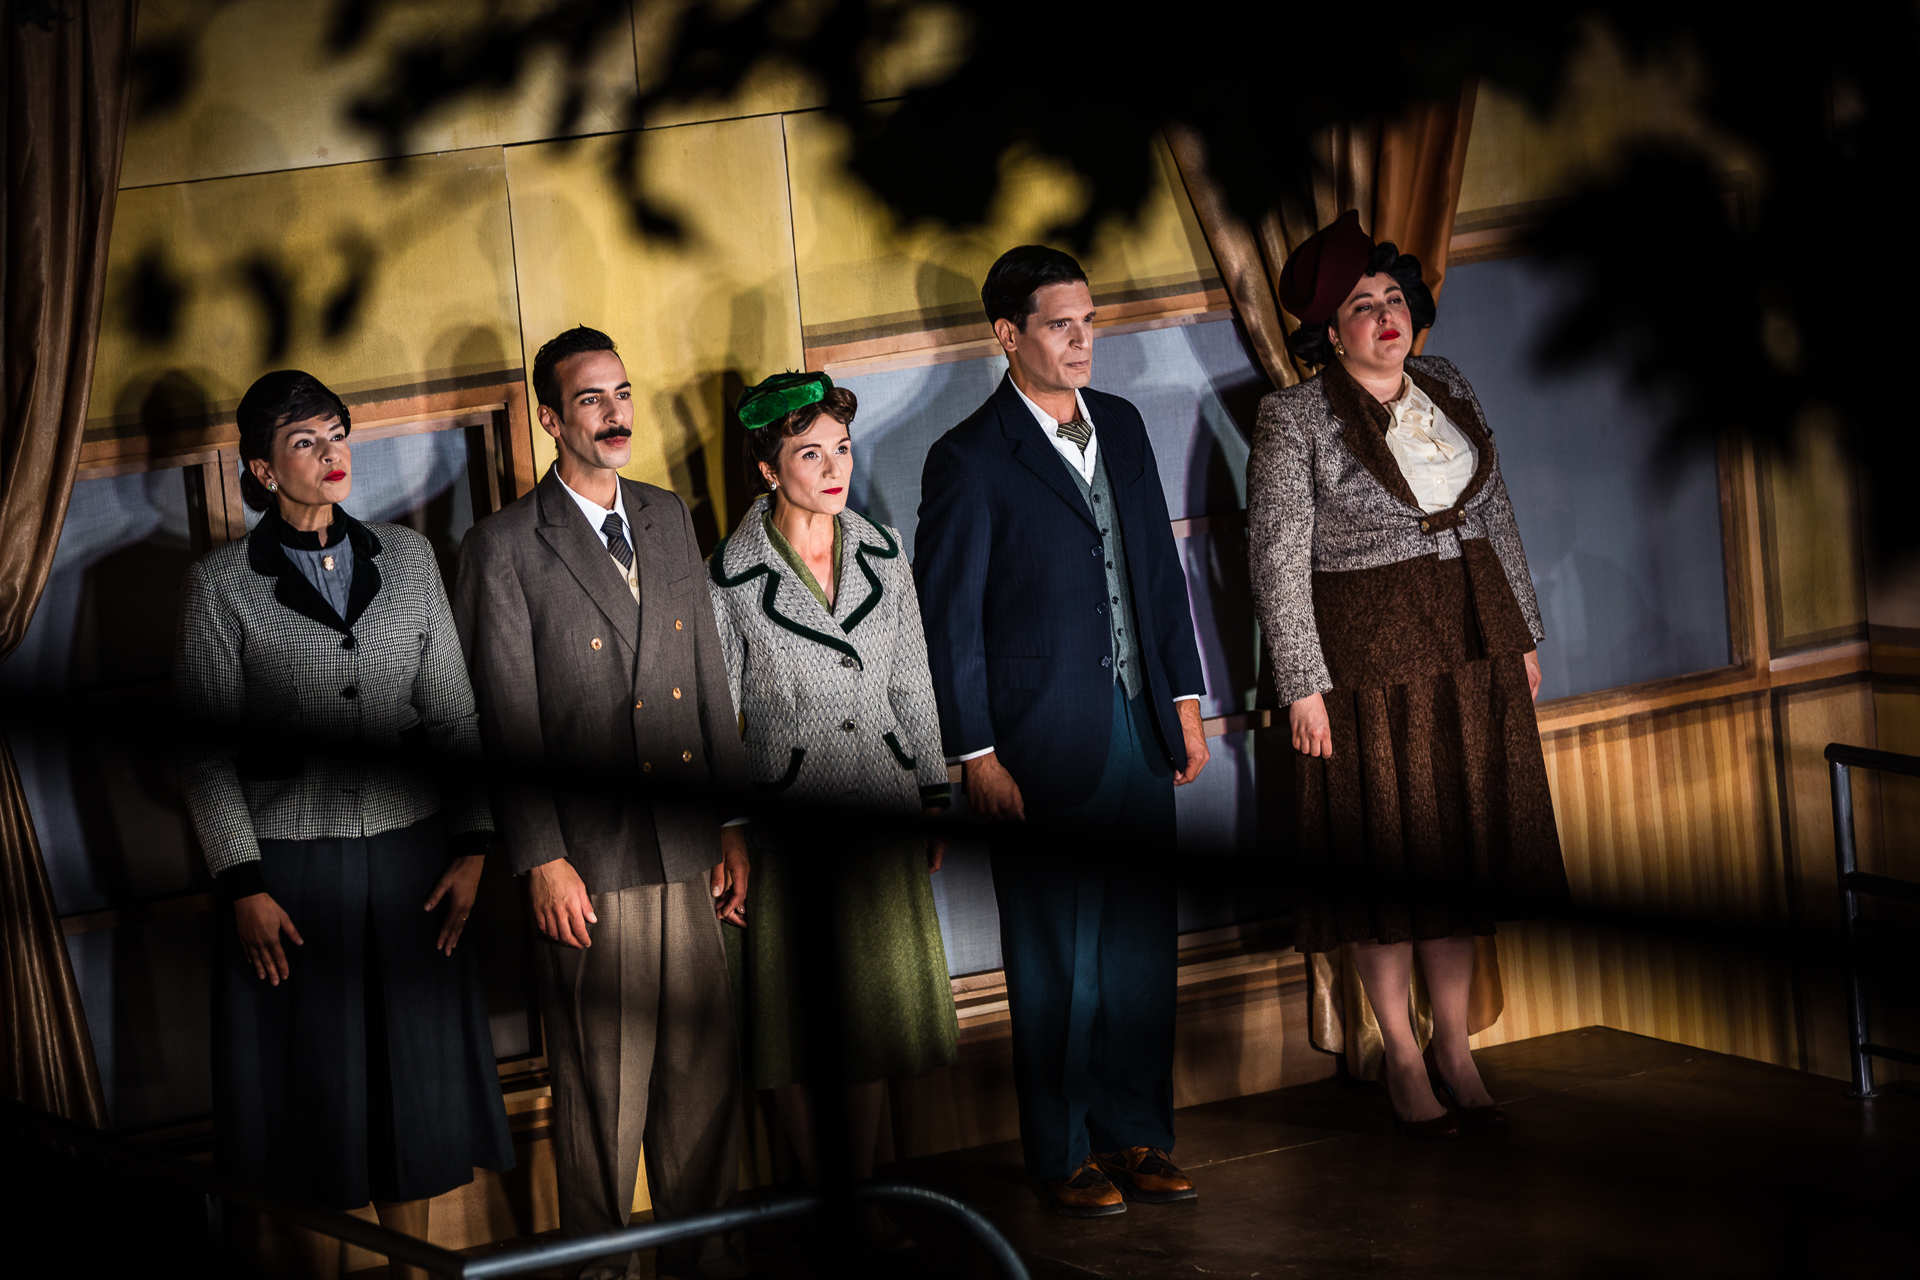 Cinco atores, três mulheres e dois homens, estão em palco. Conseguimos vê-los através de alguma vegetação, que aparece desfocada no campo da imagem. Estão vestido com roupa típica da década de 1950.